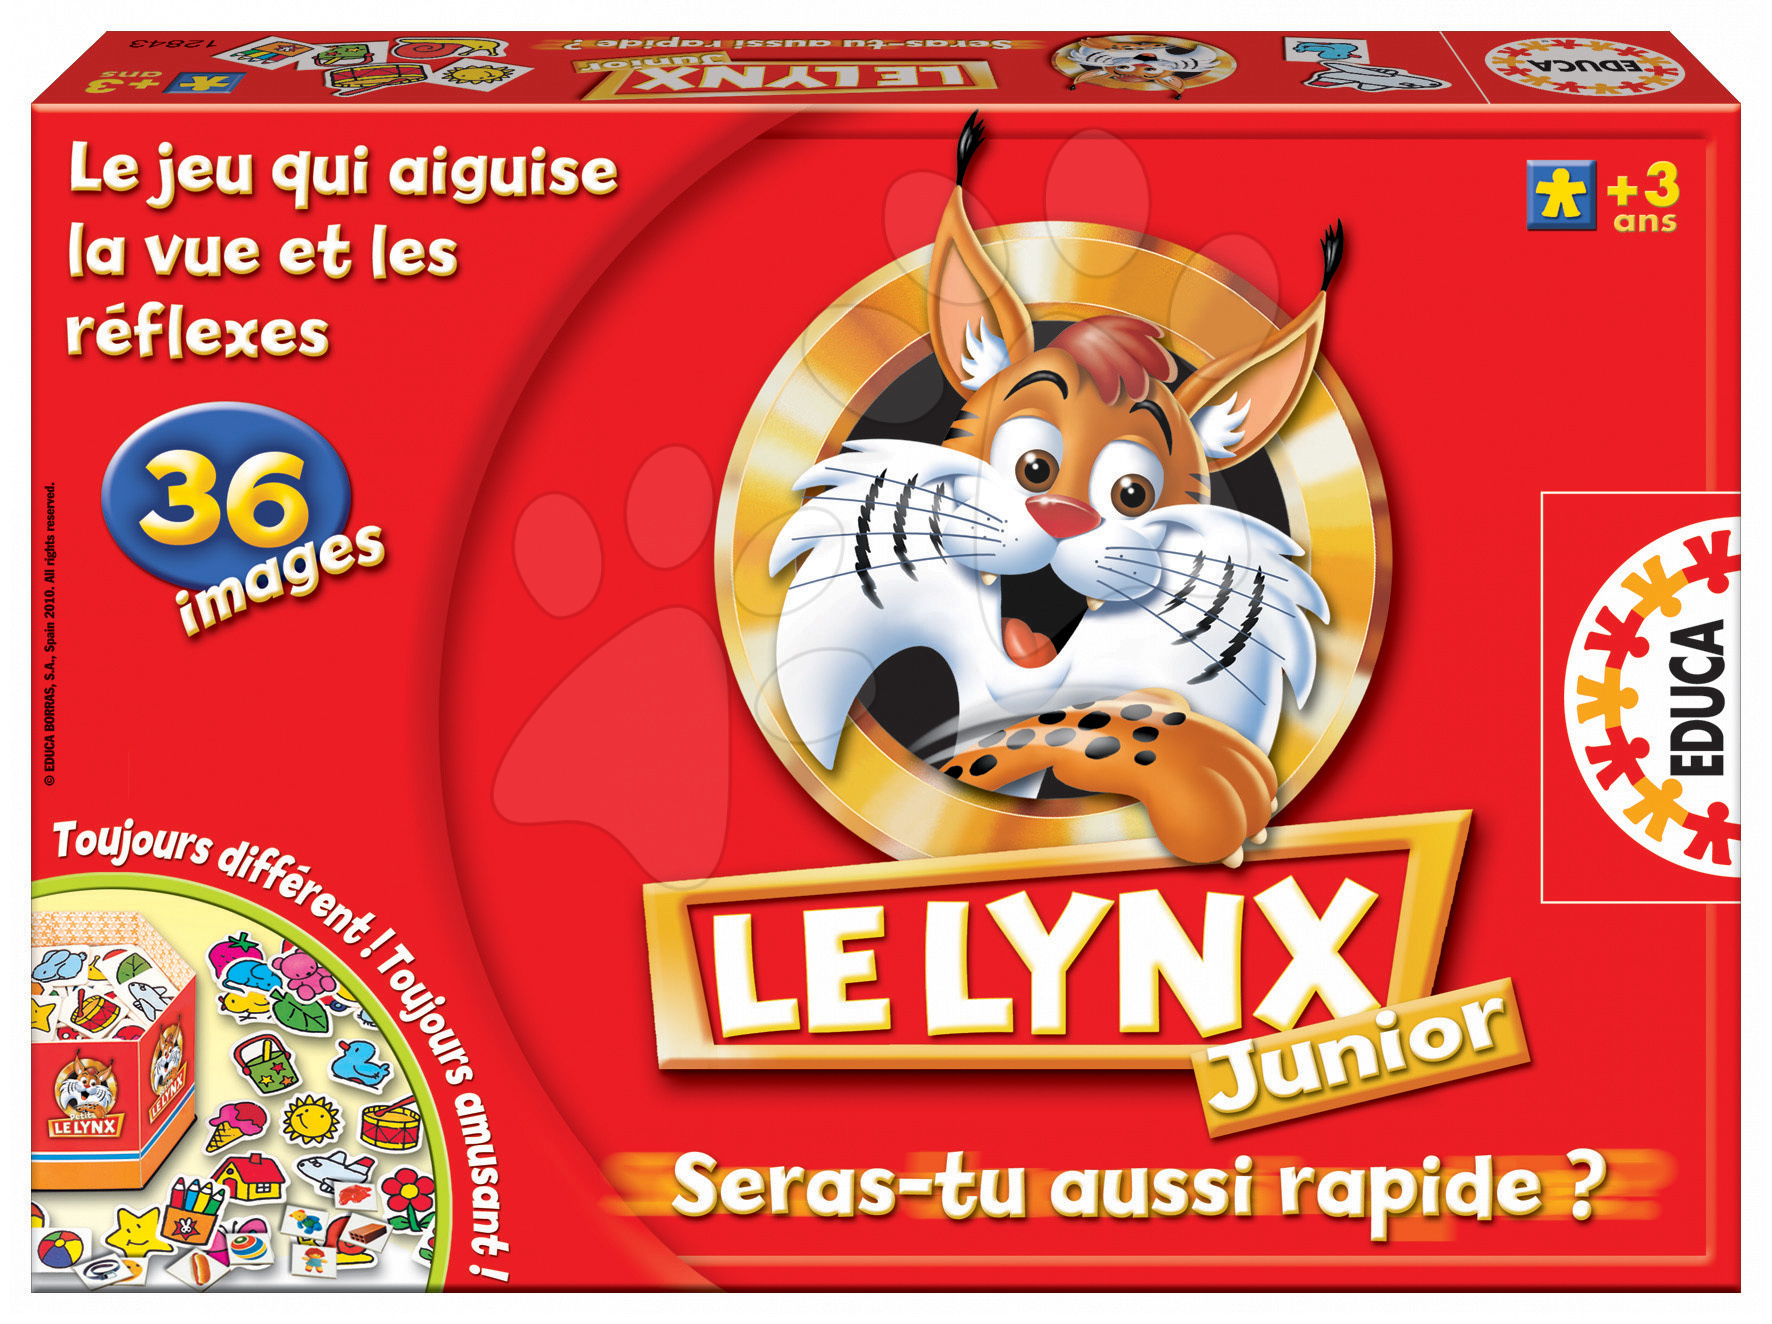 Cudzojazyčné spoločenské hry - Spoločenská hra Le Lynx Junior Educa 36 obrázkov vo francúzštine